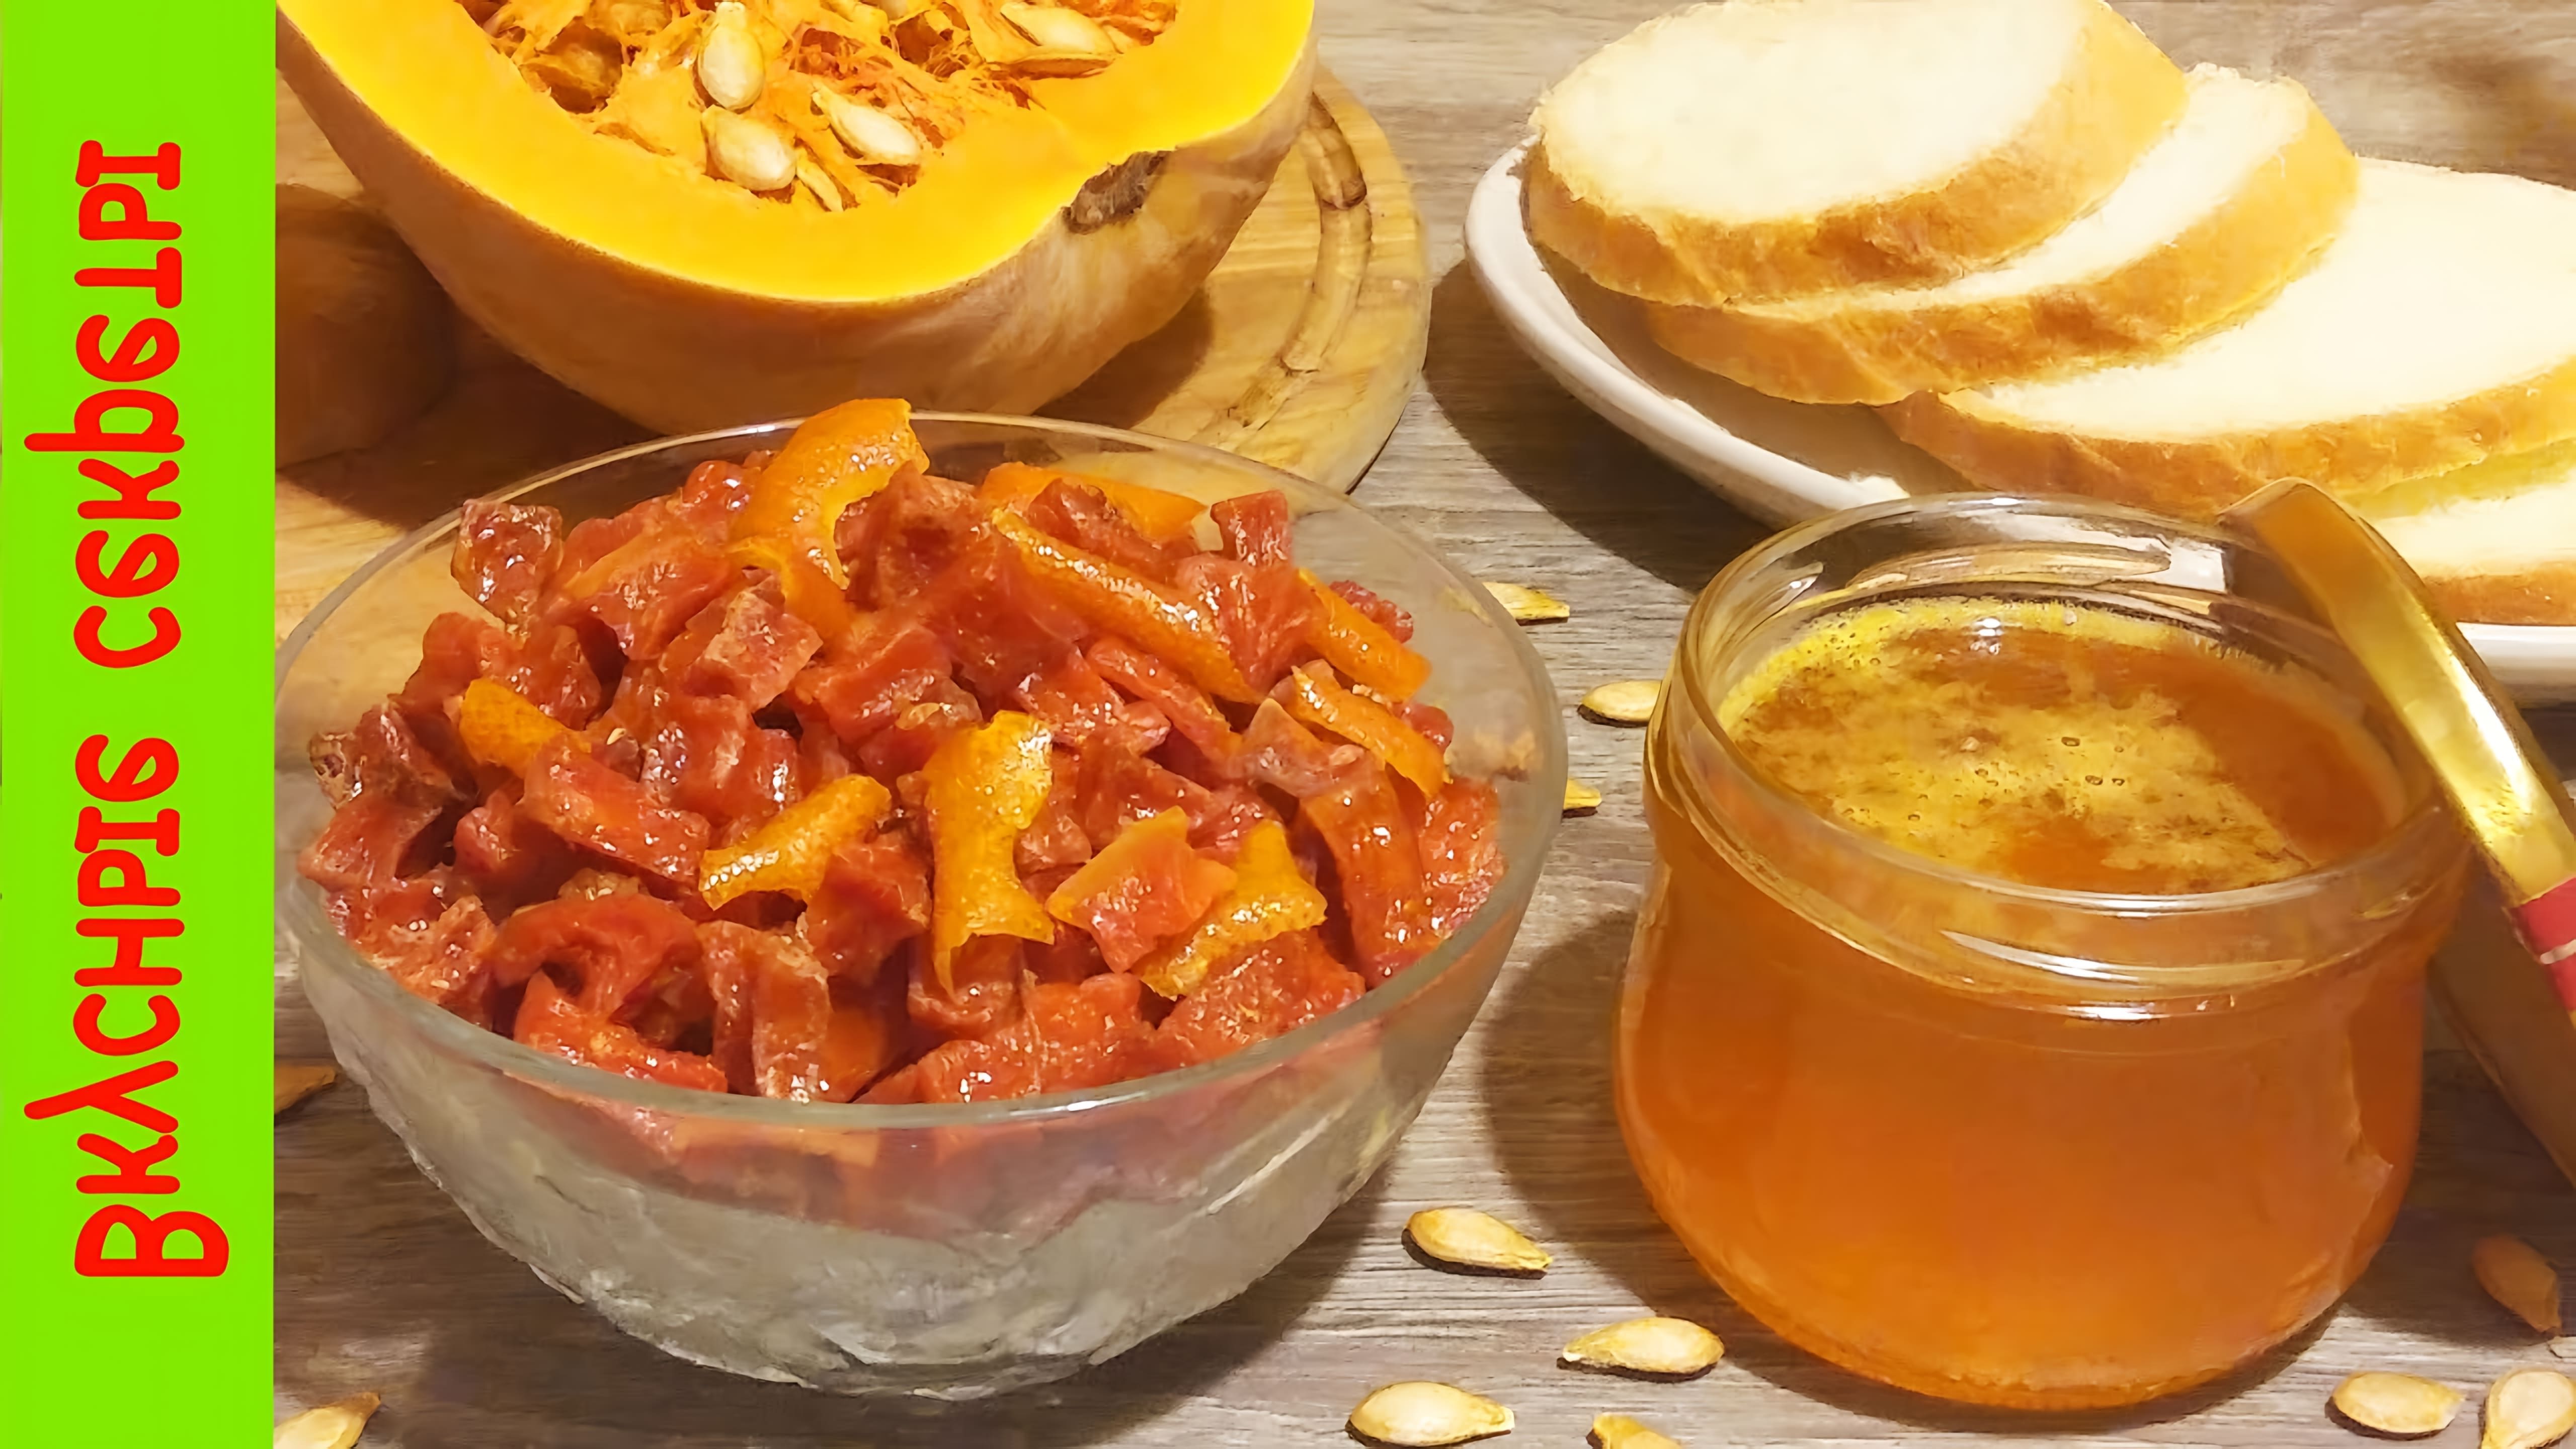 В этом видео демонстрируется рецепт приготовления цукатов из тыквы с апельсином